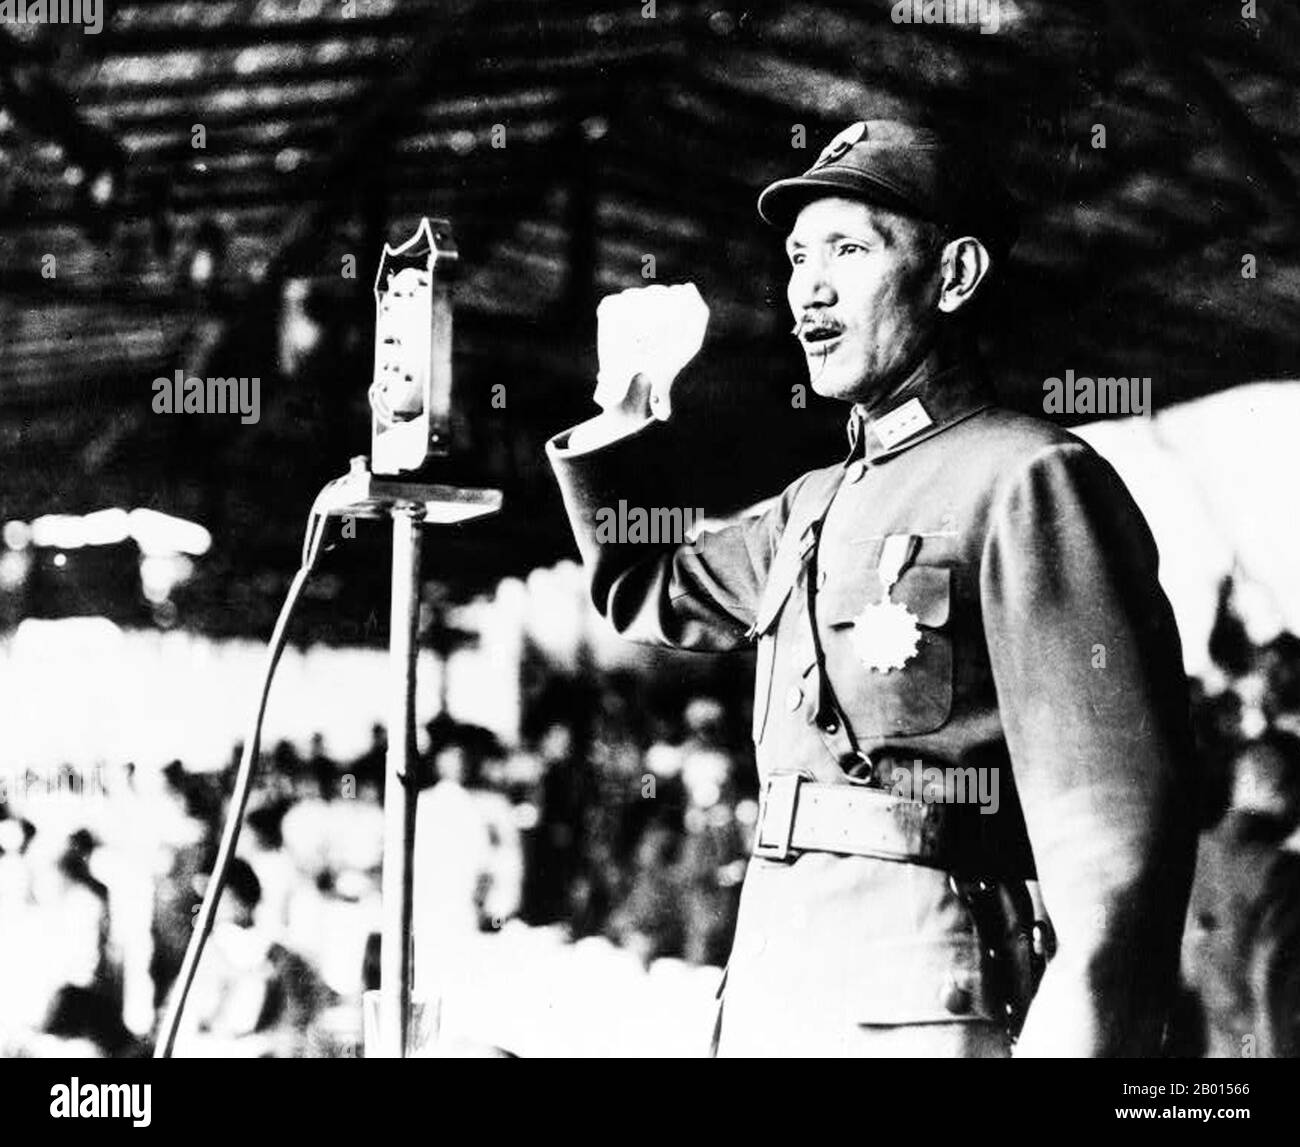 Cina: Generale Chiang Kai-shek al corpo di formazione ufficiale di Hankou, 1940. Chiang Kai-shek era un leader politico e militare della Cina del XX secolo. È conosciuto come Jiǎng Jièshí o Jiǎng Zhōngzhèng in mandarino. Chiang era un membro influente del Partito nazionalista, il Kuomintang (KMT), ed era un alleato stretto di Sun Yat-sen. Divenne il comandante dell'Accademia militare di Whampoa del Kuomintang e prese il posto di Sun come leader del KMT quando Sun morì nel 1925. Nel 1926, Chiang guidò la spedizione settentrionale per unificare il paese. Foto Stock